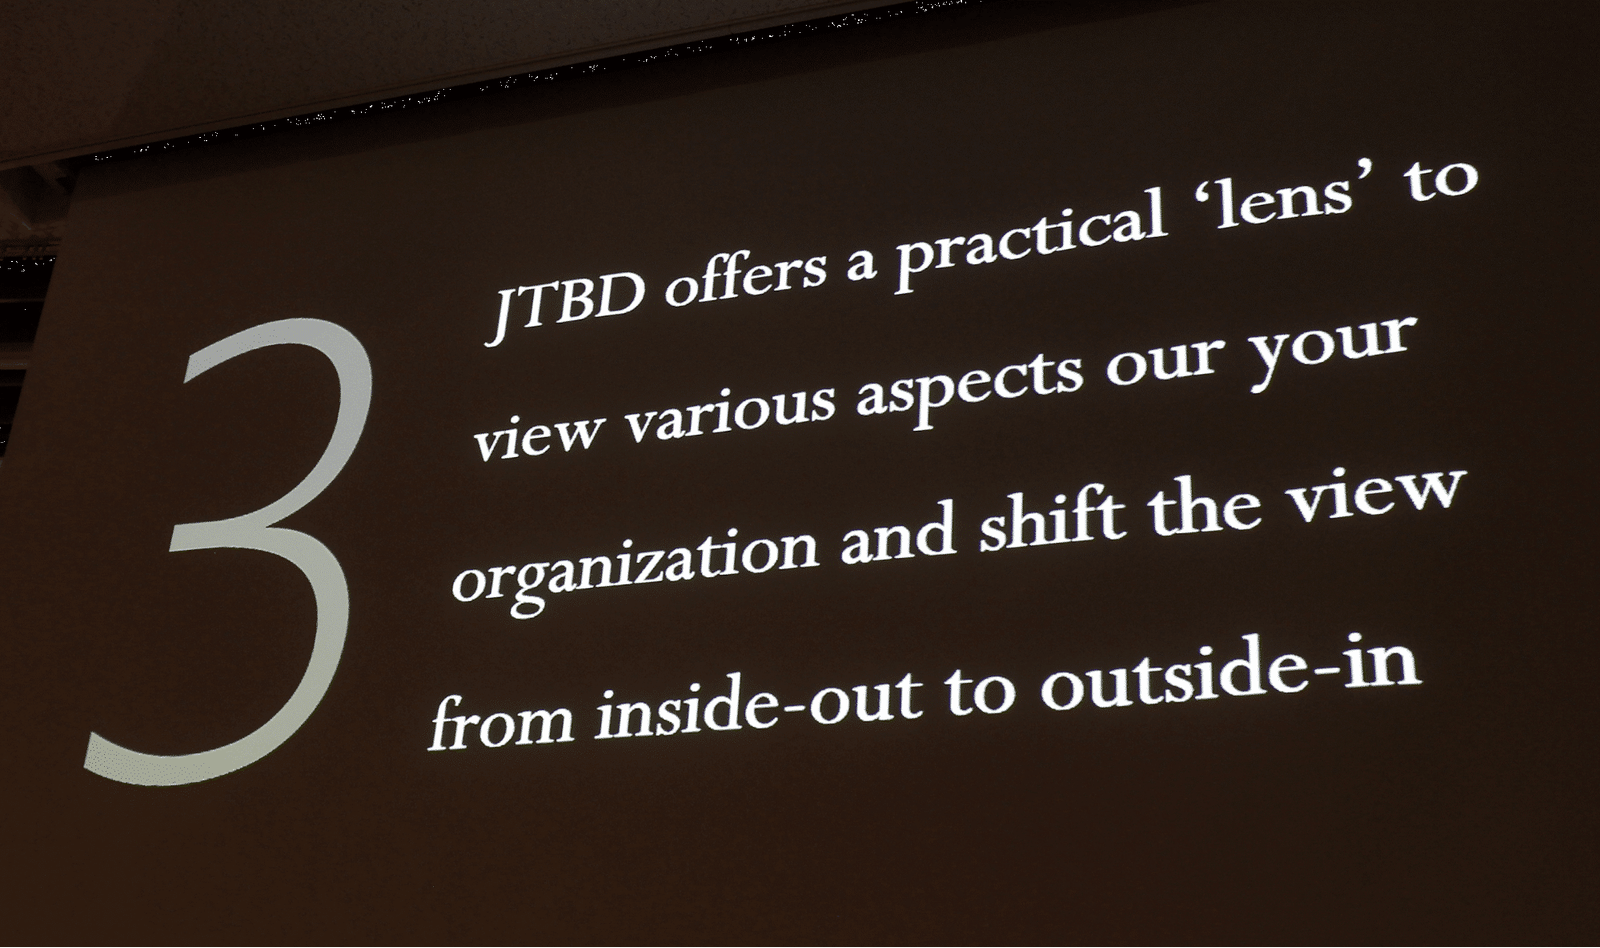 3. JTBDは、組織を外から見る視点を提供し、その視点は中から外、また外から中へシフトすることが可能です。これはとてもエキサイティングなことです。